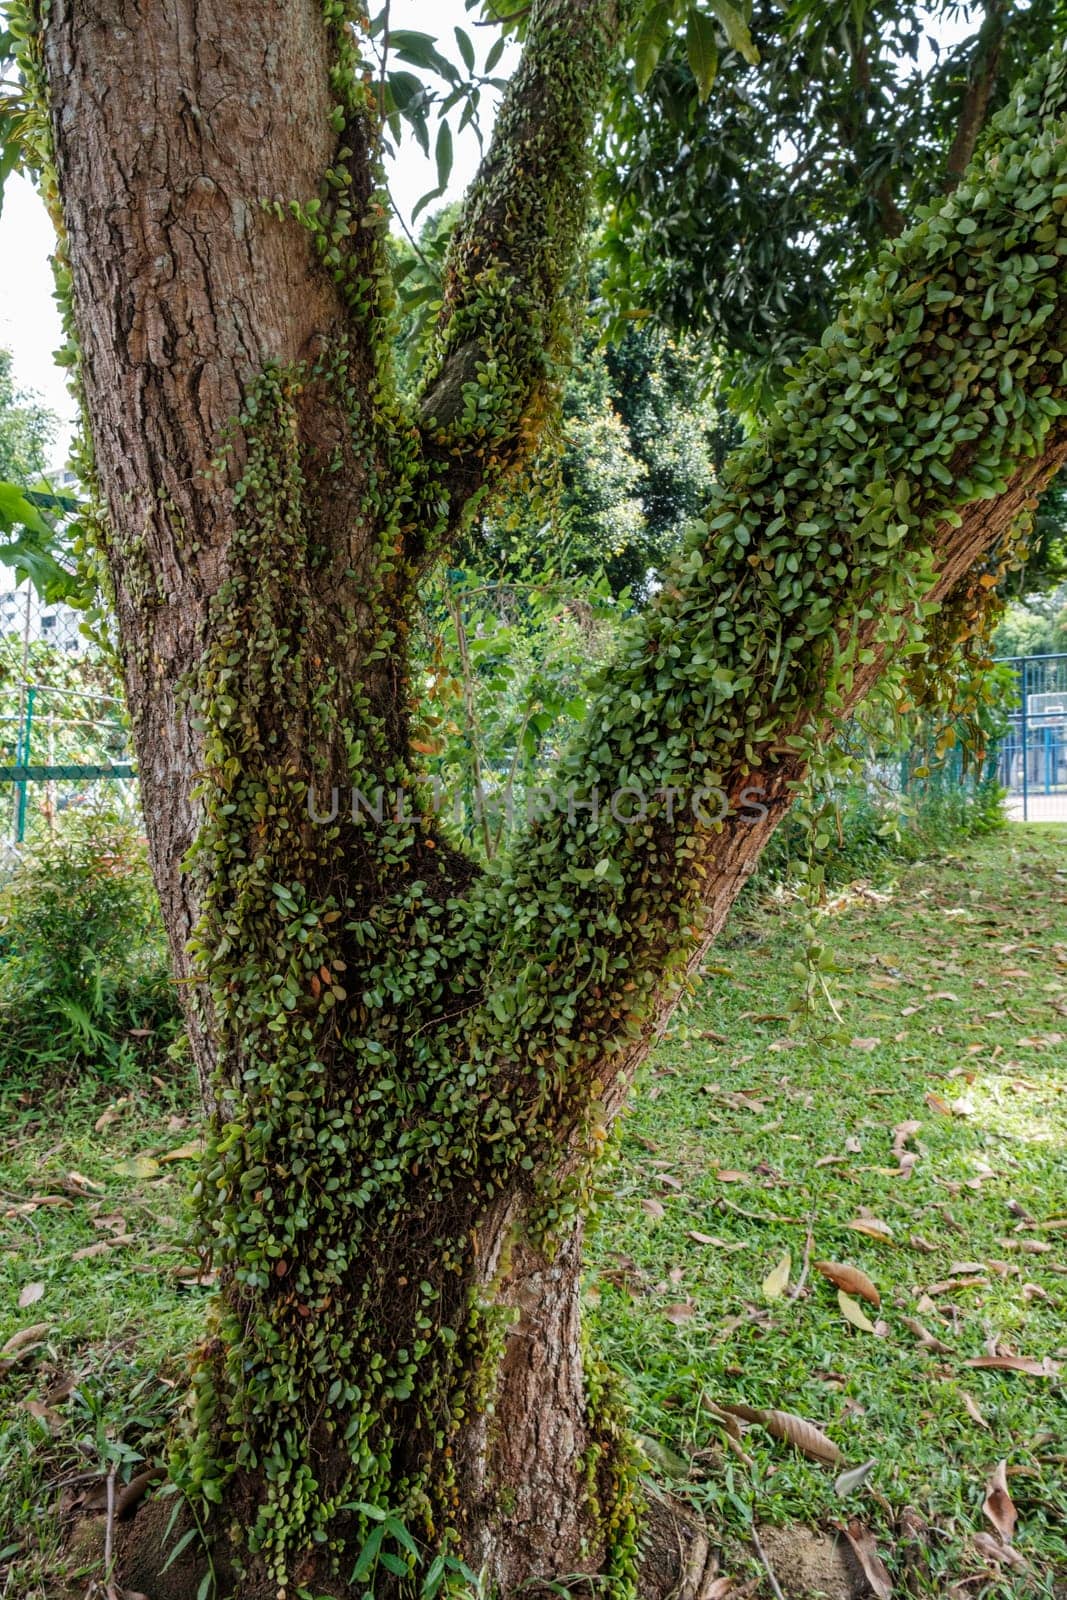 Green Leaves Growing on Tree